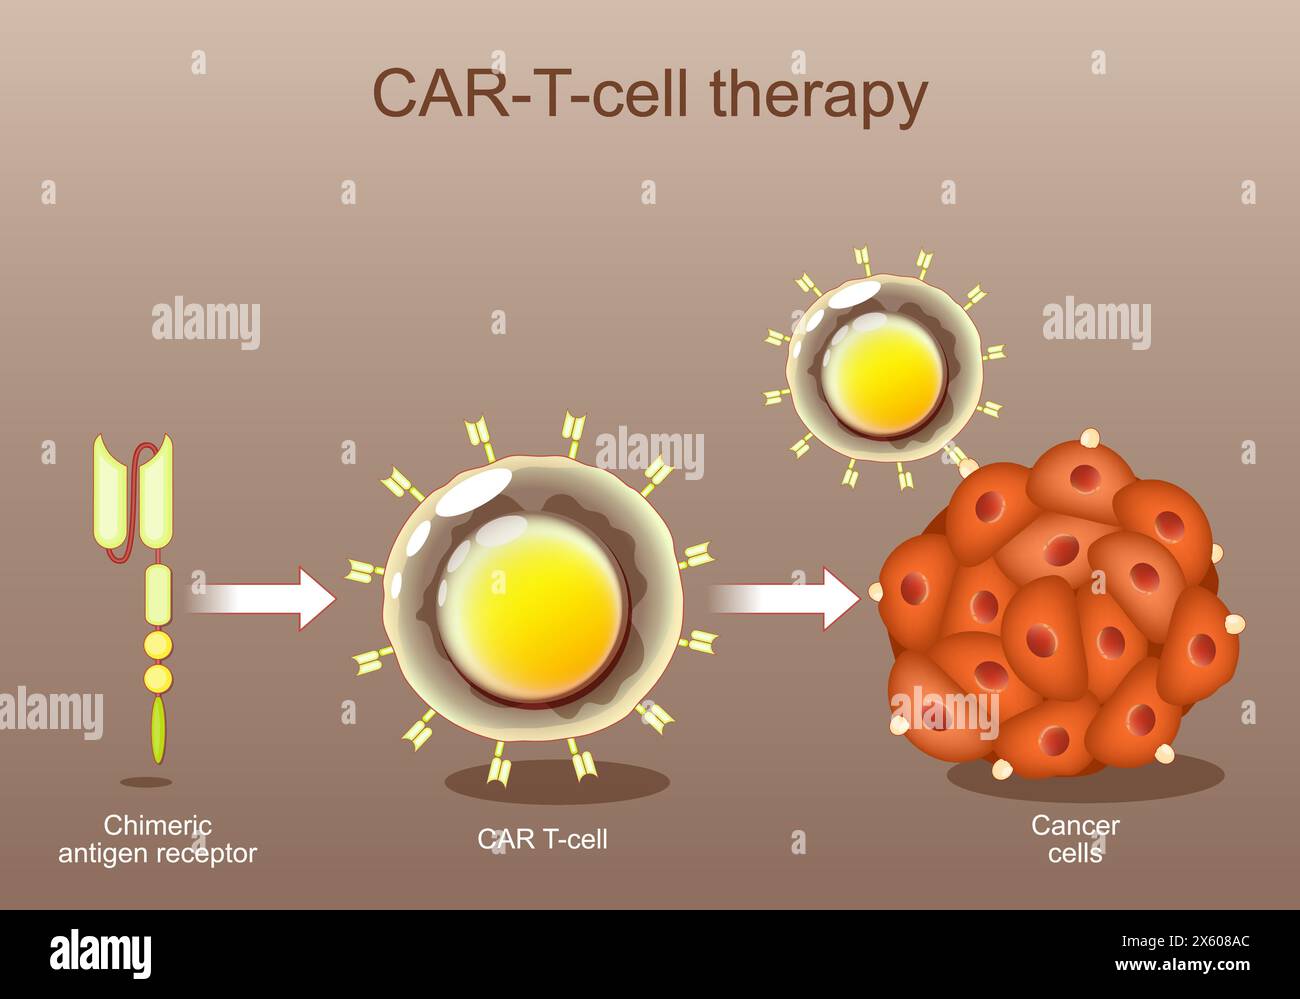 Thérapie par les cellules CAR-T. immunothérapie anticancéreuse. Récepteur d'antigène chimérique. Génie génétique. Médecine personnalisée. Ciblage tumoral. Illustration vectorielle. Illustration de Vecteur